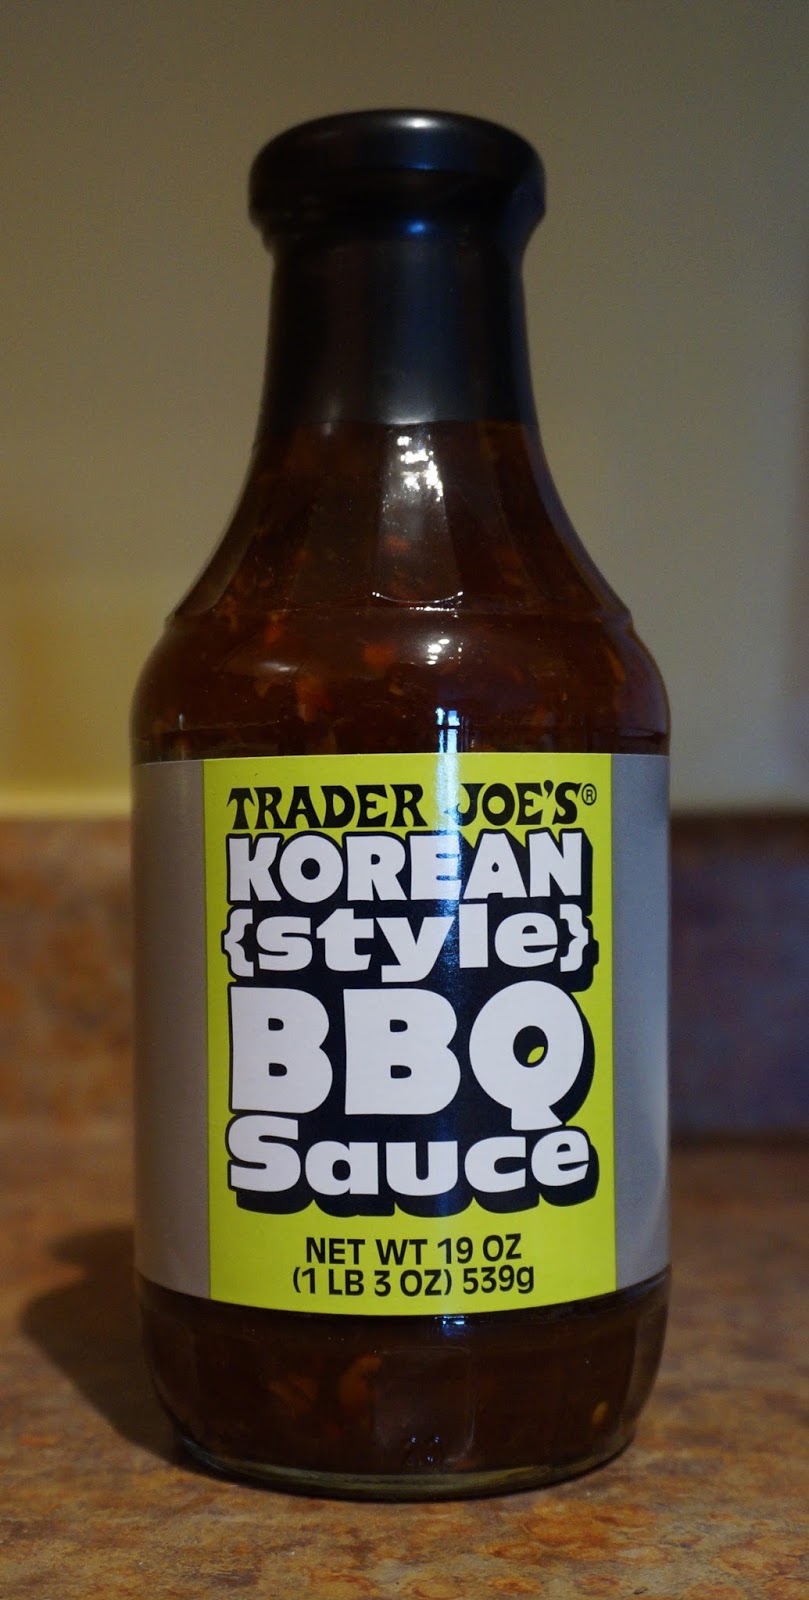 Exploring Trader Joe's: Trader Joe's Korean Style BBQ Sauce